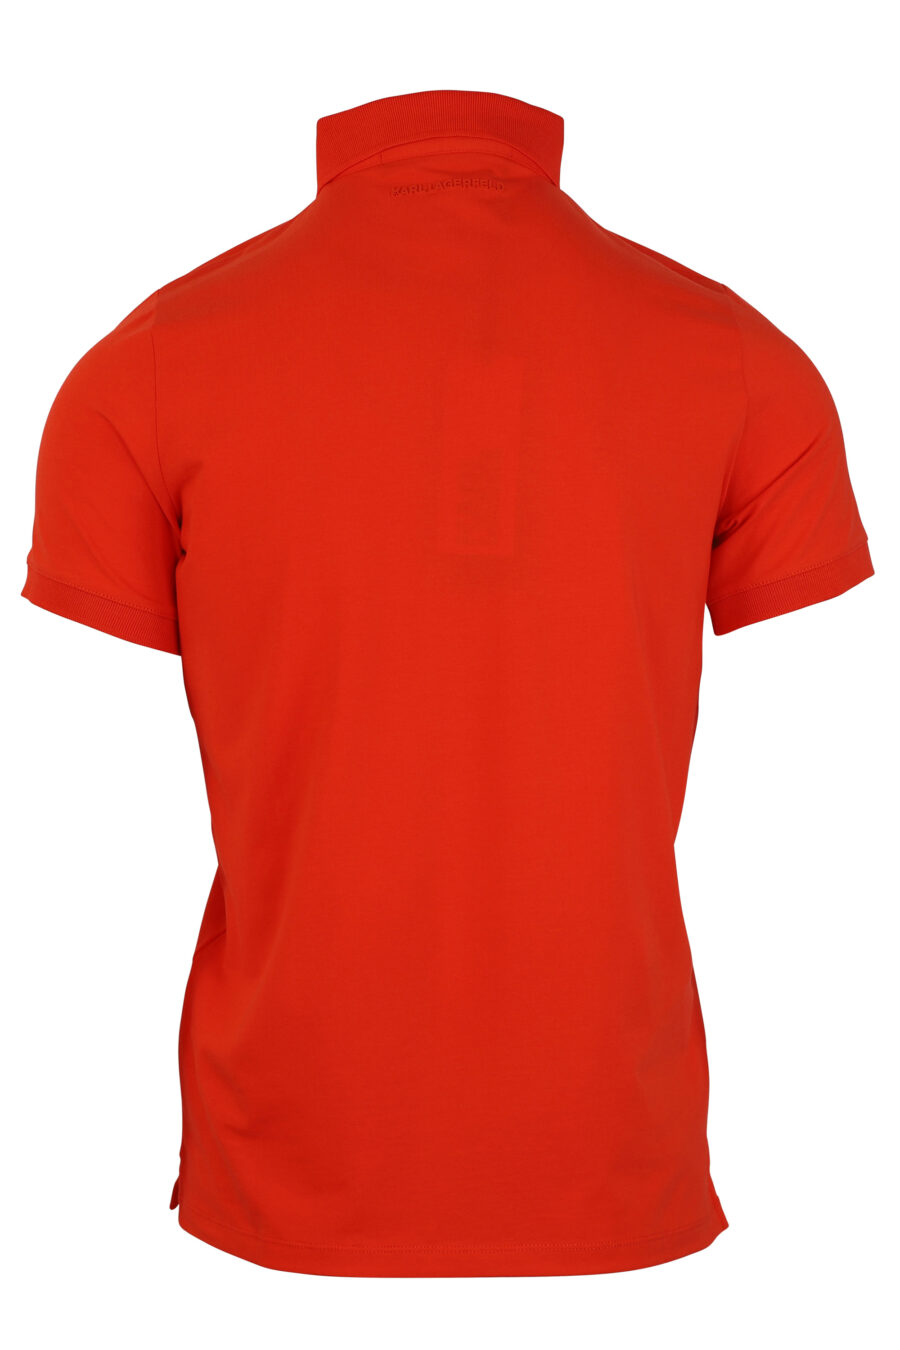 Pólo laranja avermelhado com mini-logotipo em borracha - 4062226275101 2